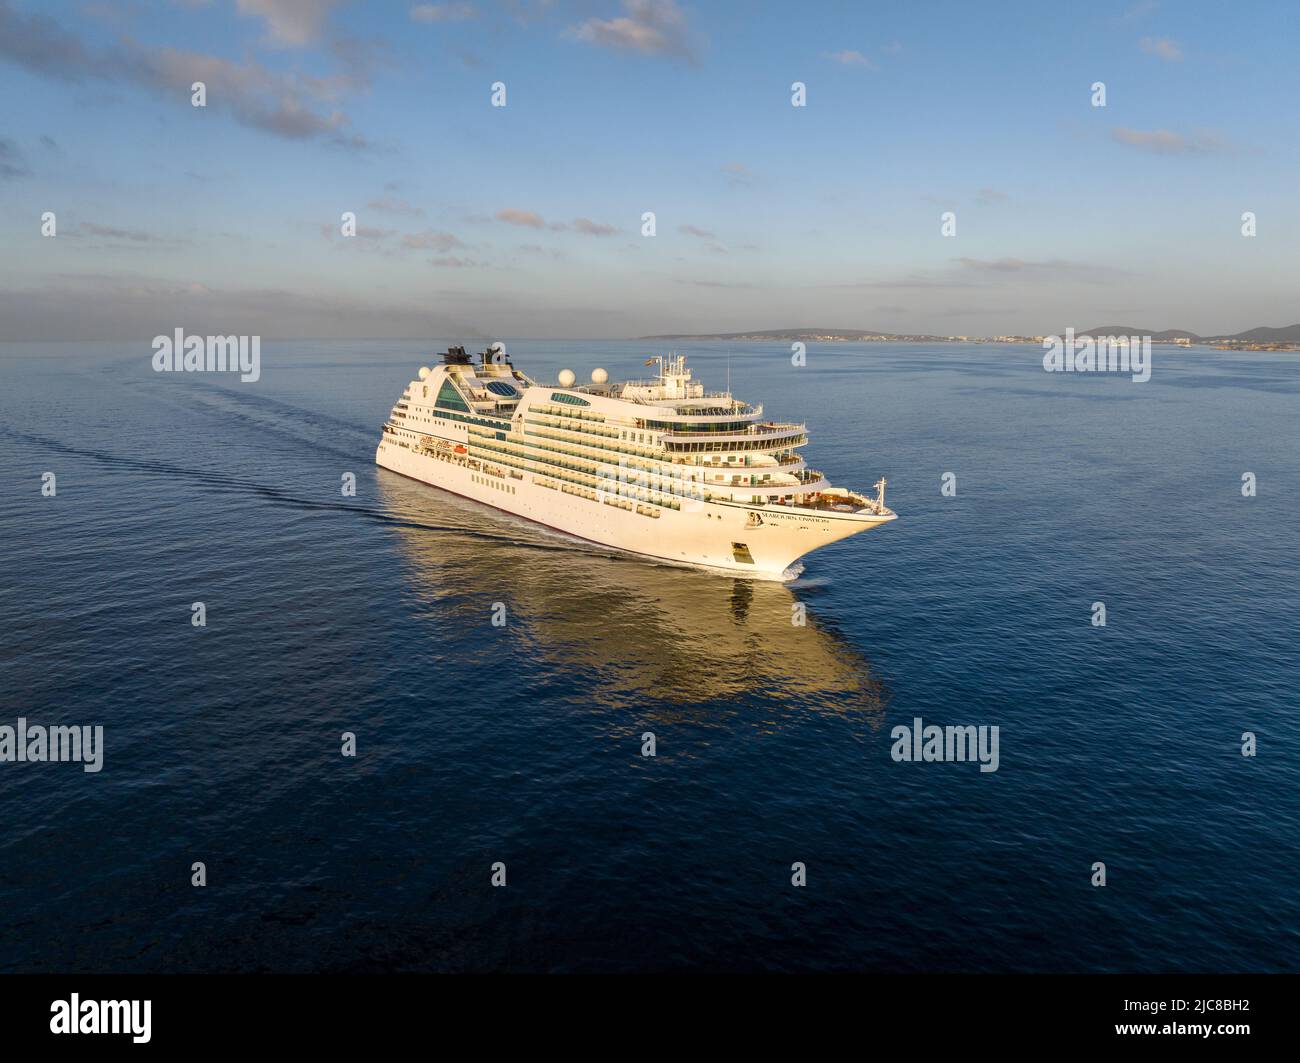 Die MV Seabourn Ovation ist ein Kreuzfahrtschiff der Seabourn Cruise Line. Luftaufnahme von Seabourn Ovation auf dem Weg nach Mallorca Spanien. Stockfoto